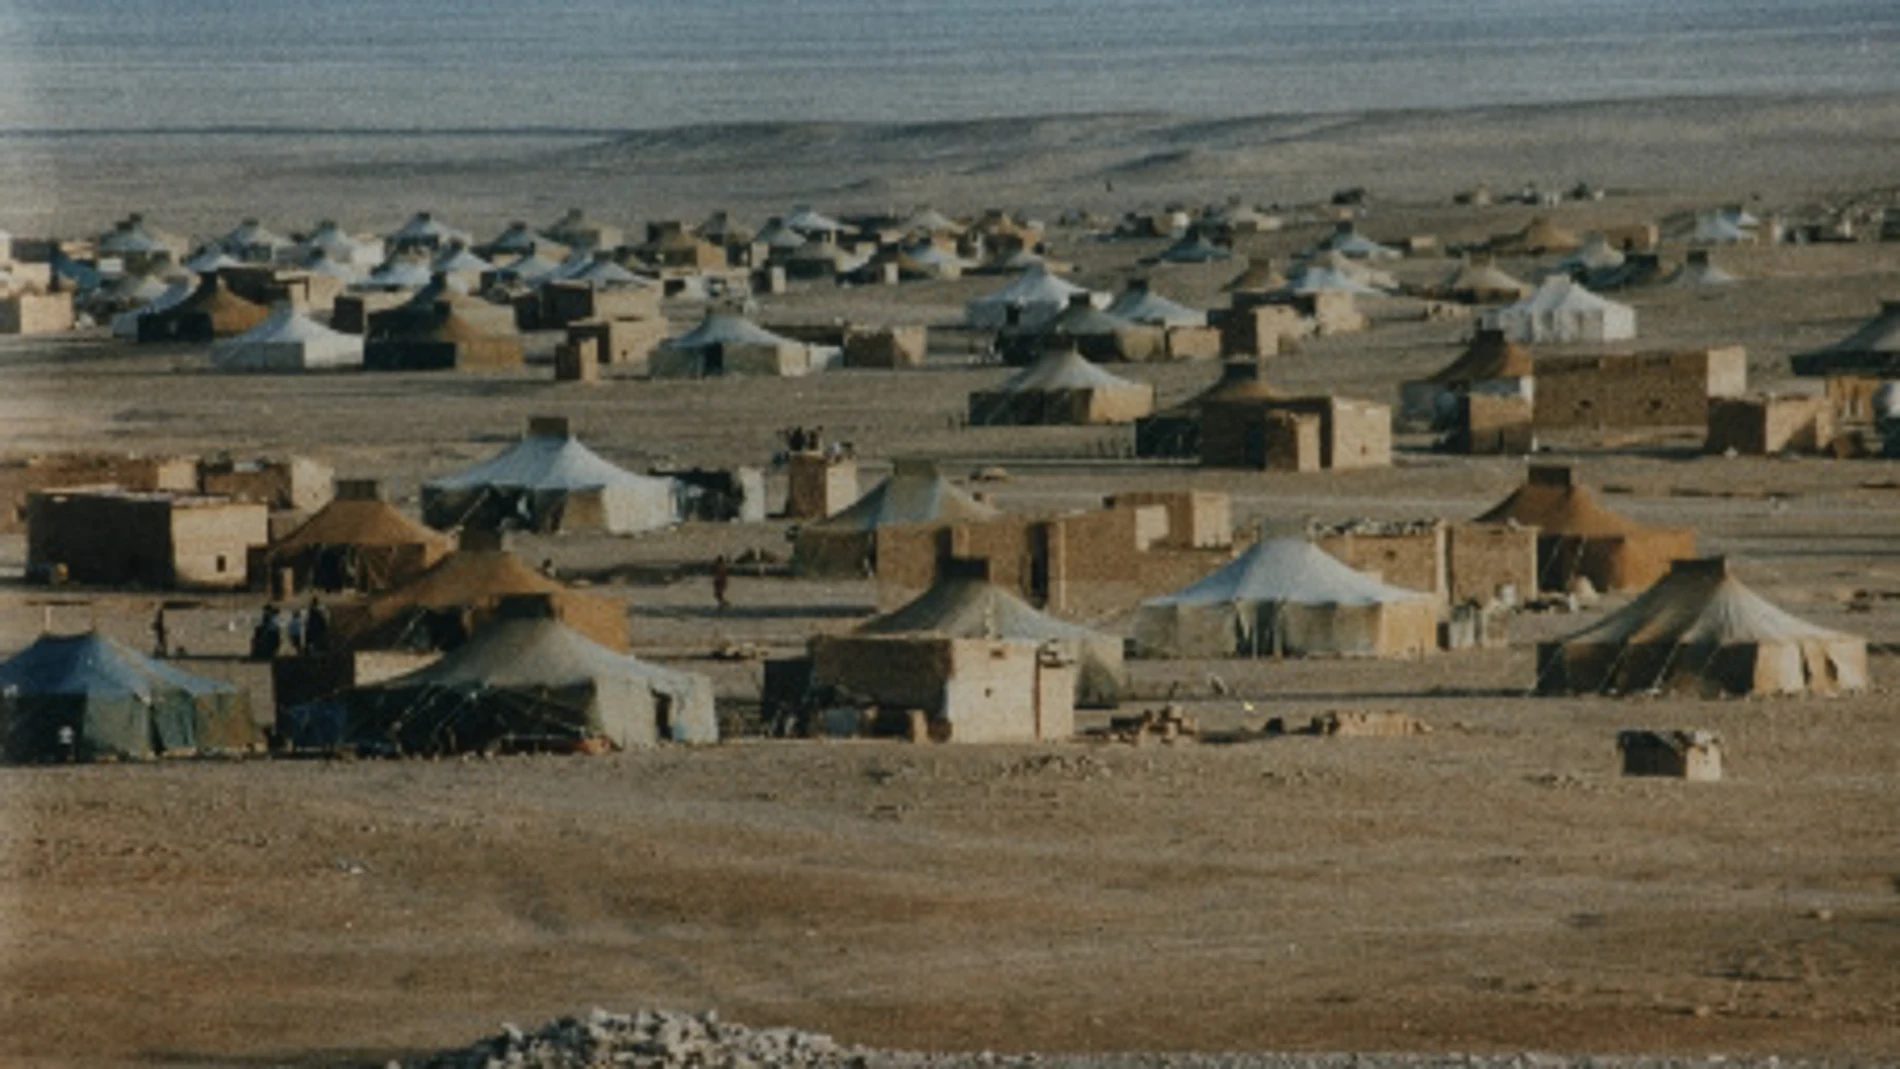 Imágen de archivo de un campamento de refugiados en el Sáhara Occidental